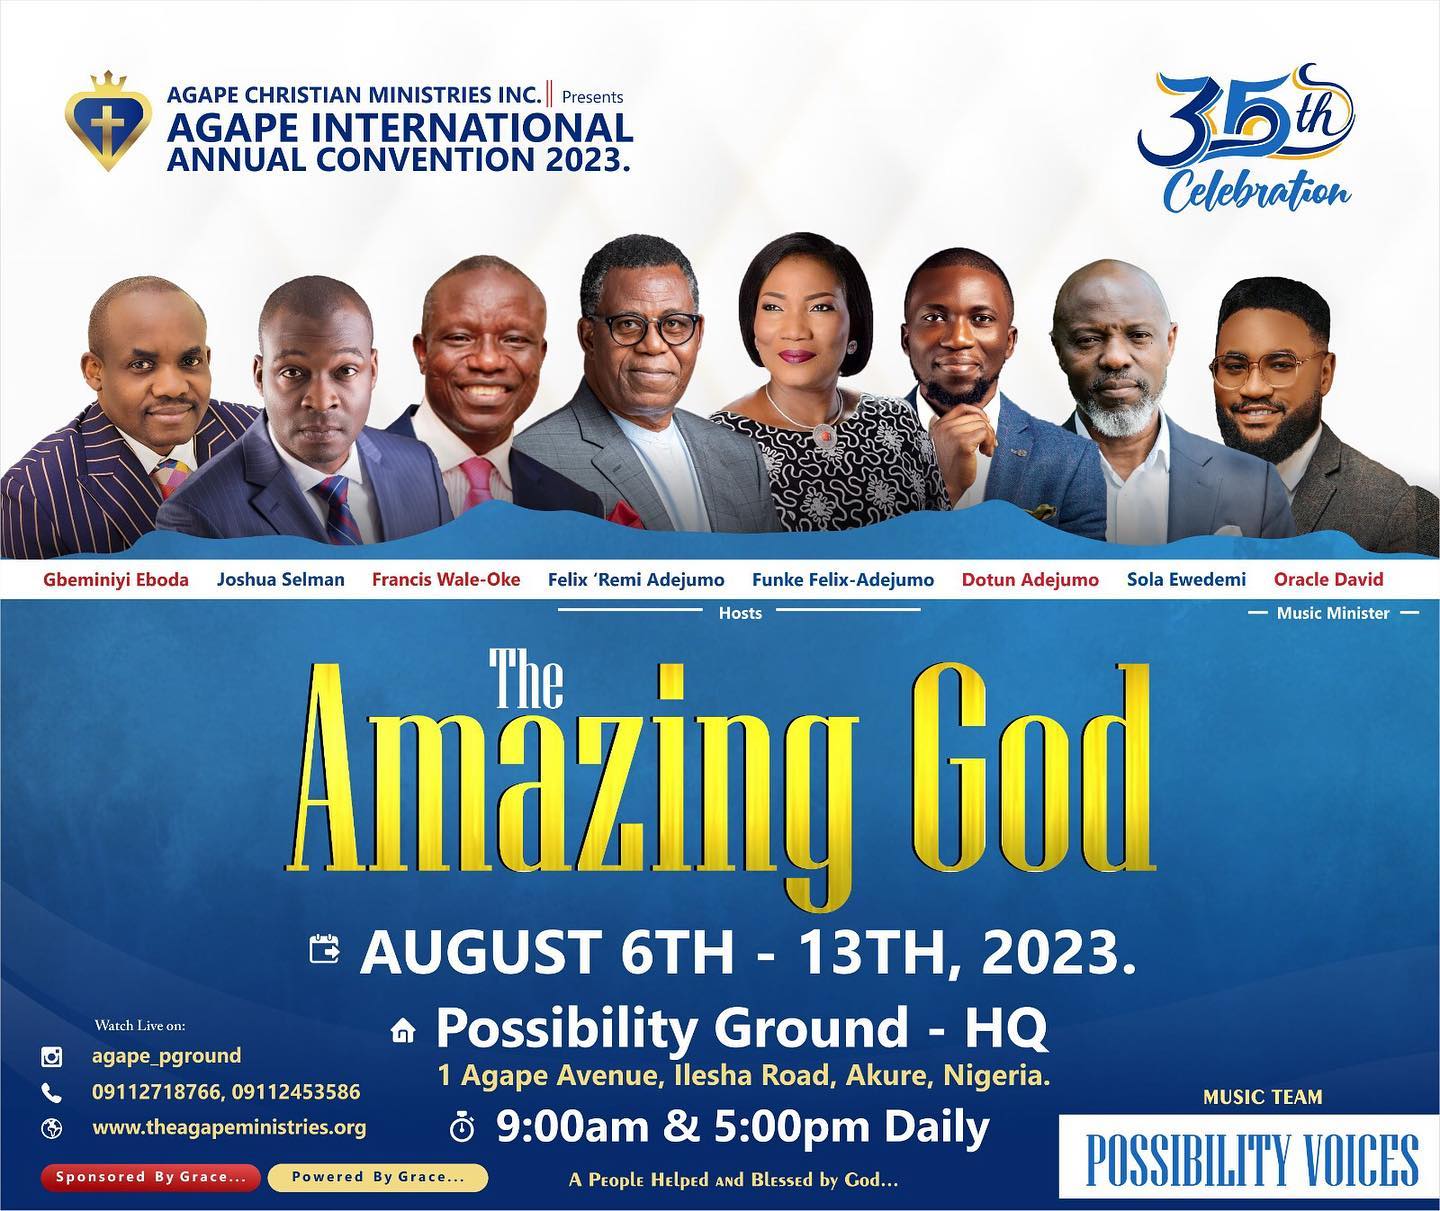 Agape 35th International Annual Convention 2023